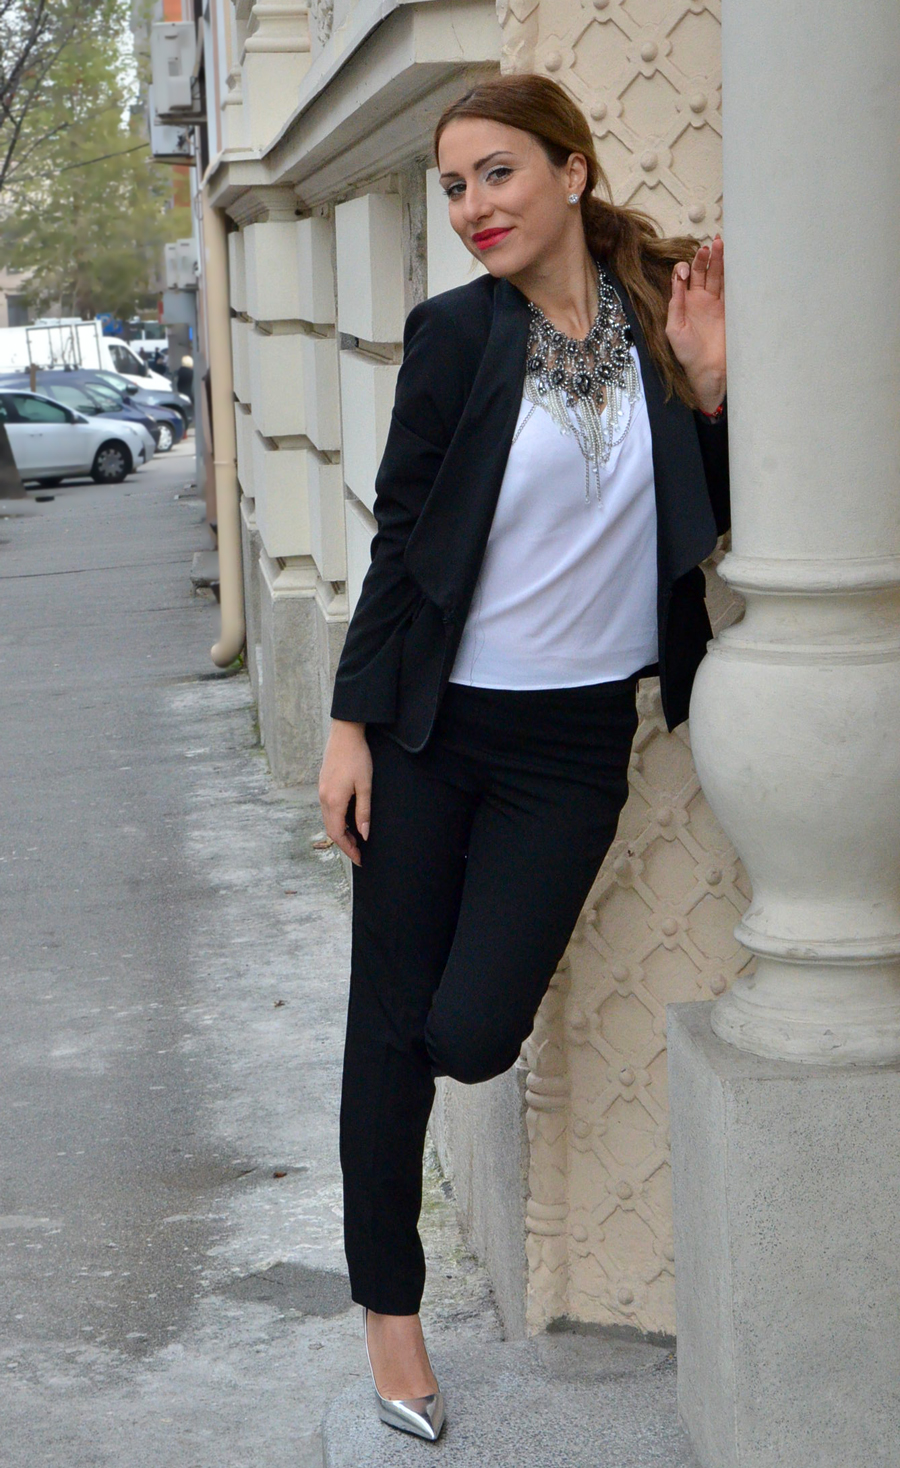 Women's tuxedo Outfit / Stasha Fashion by Anastasija Milojevic